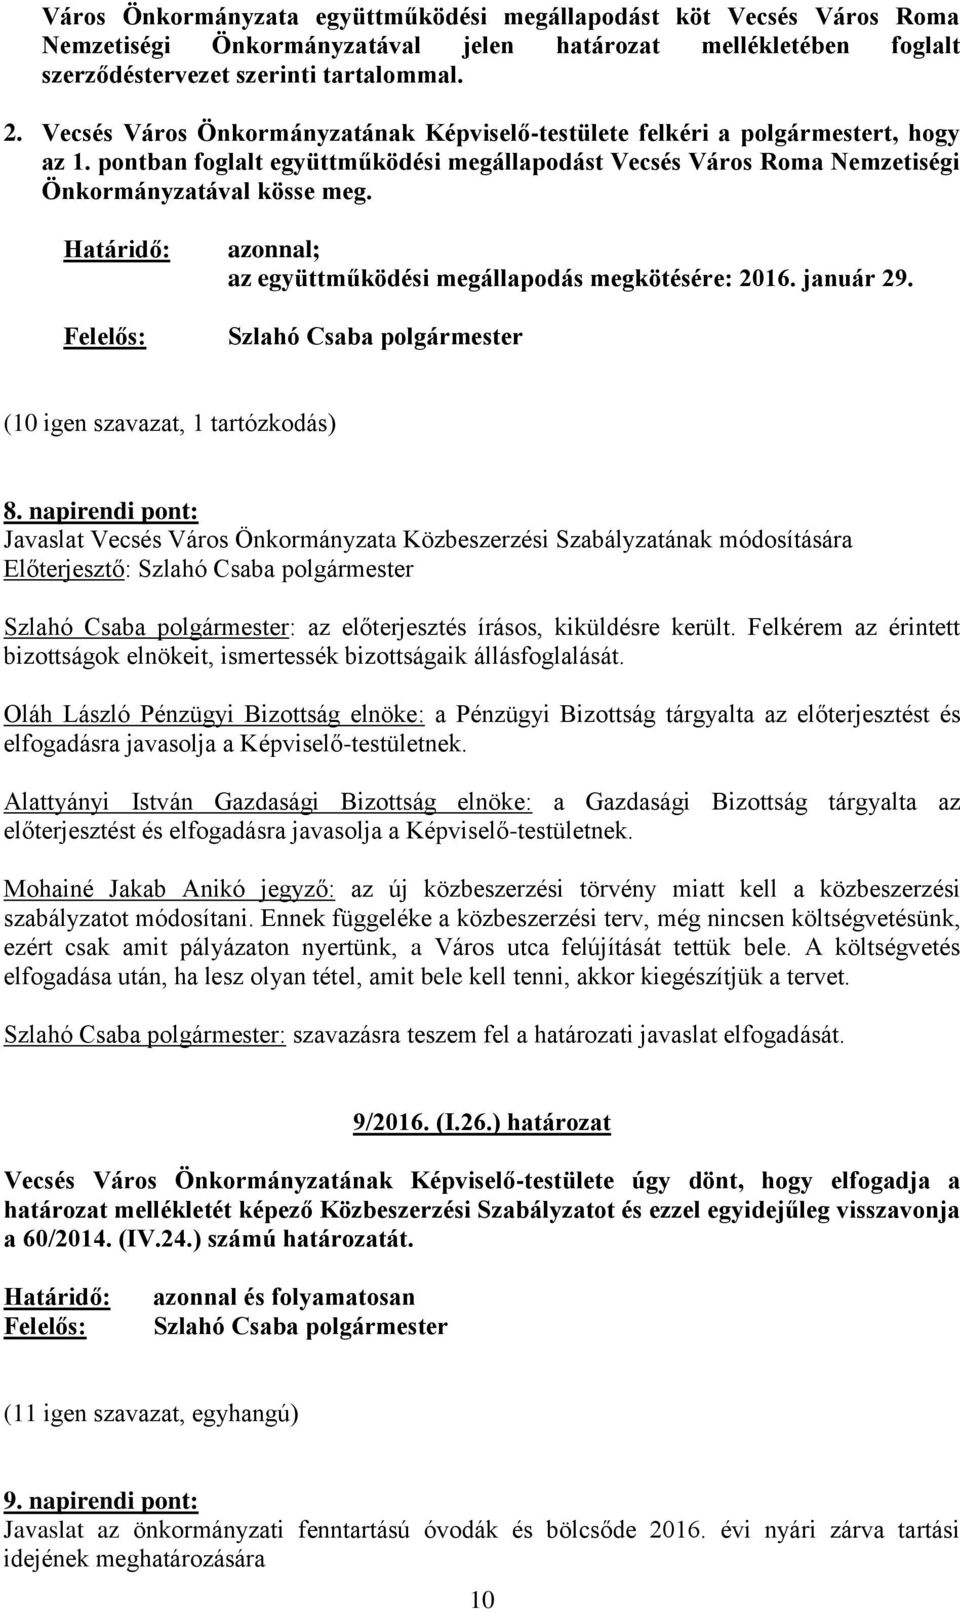 Határidő: Felelős: azonnal; az együttműködési megállapodás megkötésére: 2016. január 29. Szlahó Csaba polgármester (10 igen szavazat, 1 tartózkodás) 8.